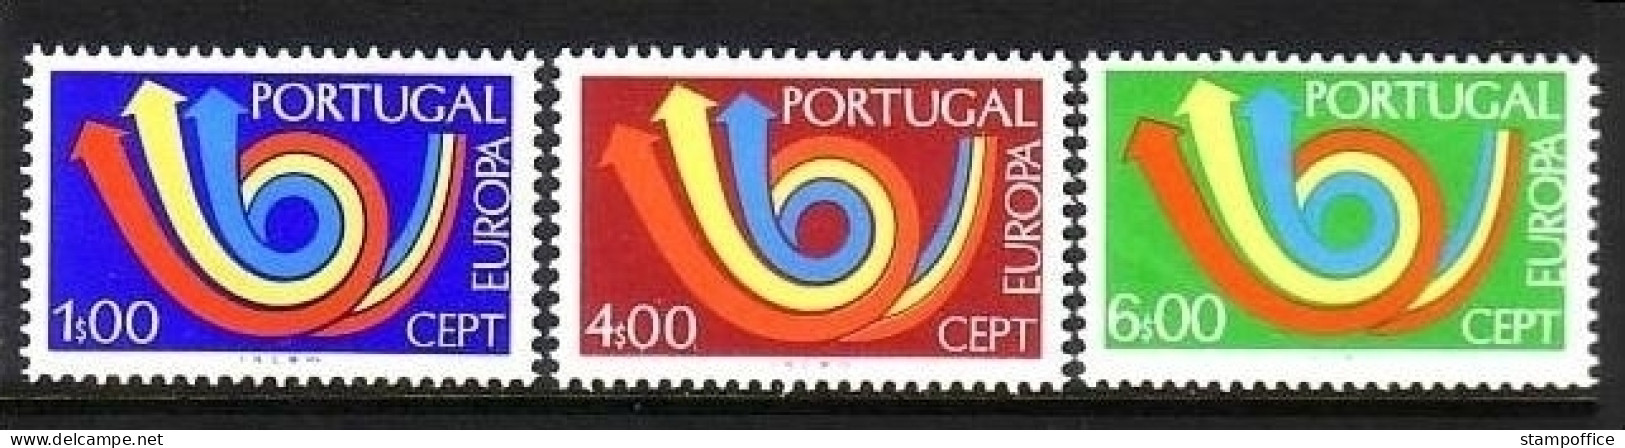 PORTUGAL MI-NR. 1199-1201 POSTFRISCH(MINT) EUROPA 1973 - 1973